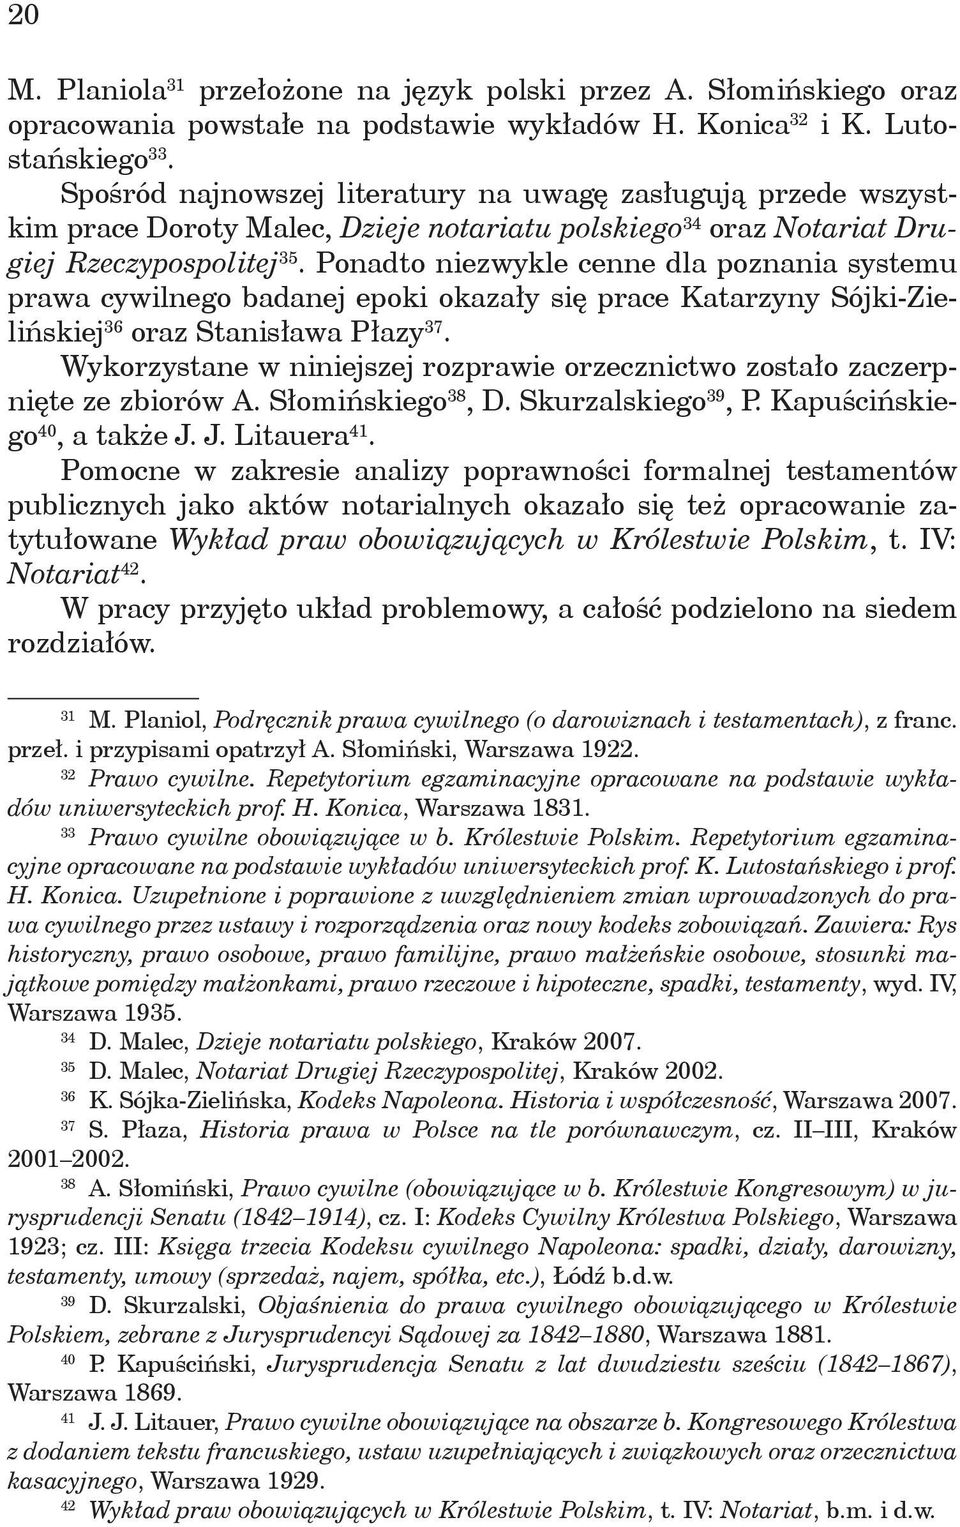 Ponadto niezwykle cenne dla poznania systemu prawa cywilnego badanej epoki okazały się prace Katarzyny Sójki-Zielińskiej 36 oraz Stanisława Płazy 37.